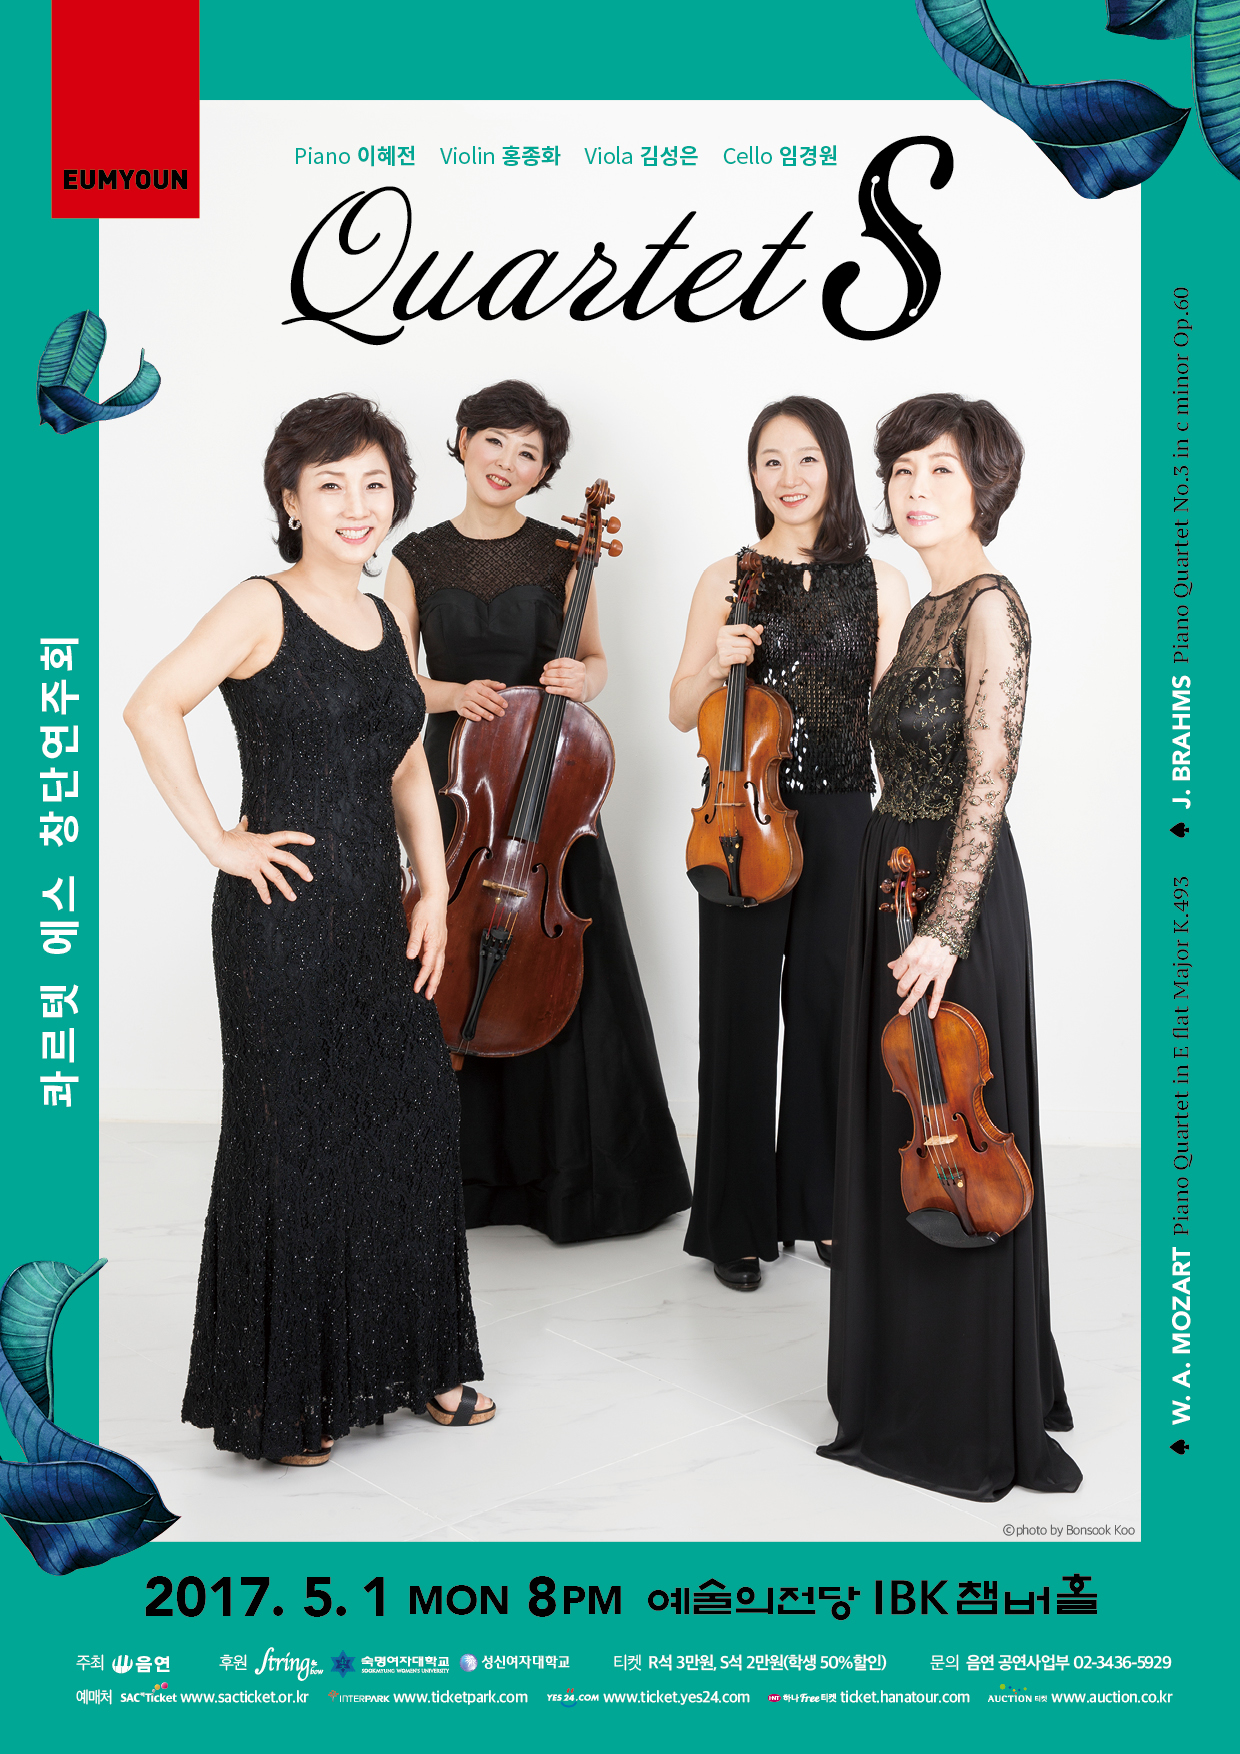 [5. 1 MON 오후 8시] Quartet S 창단연주회  이미지